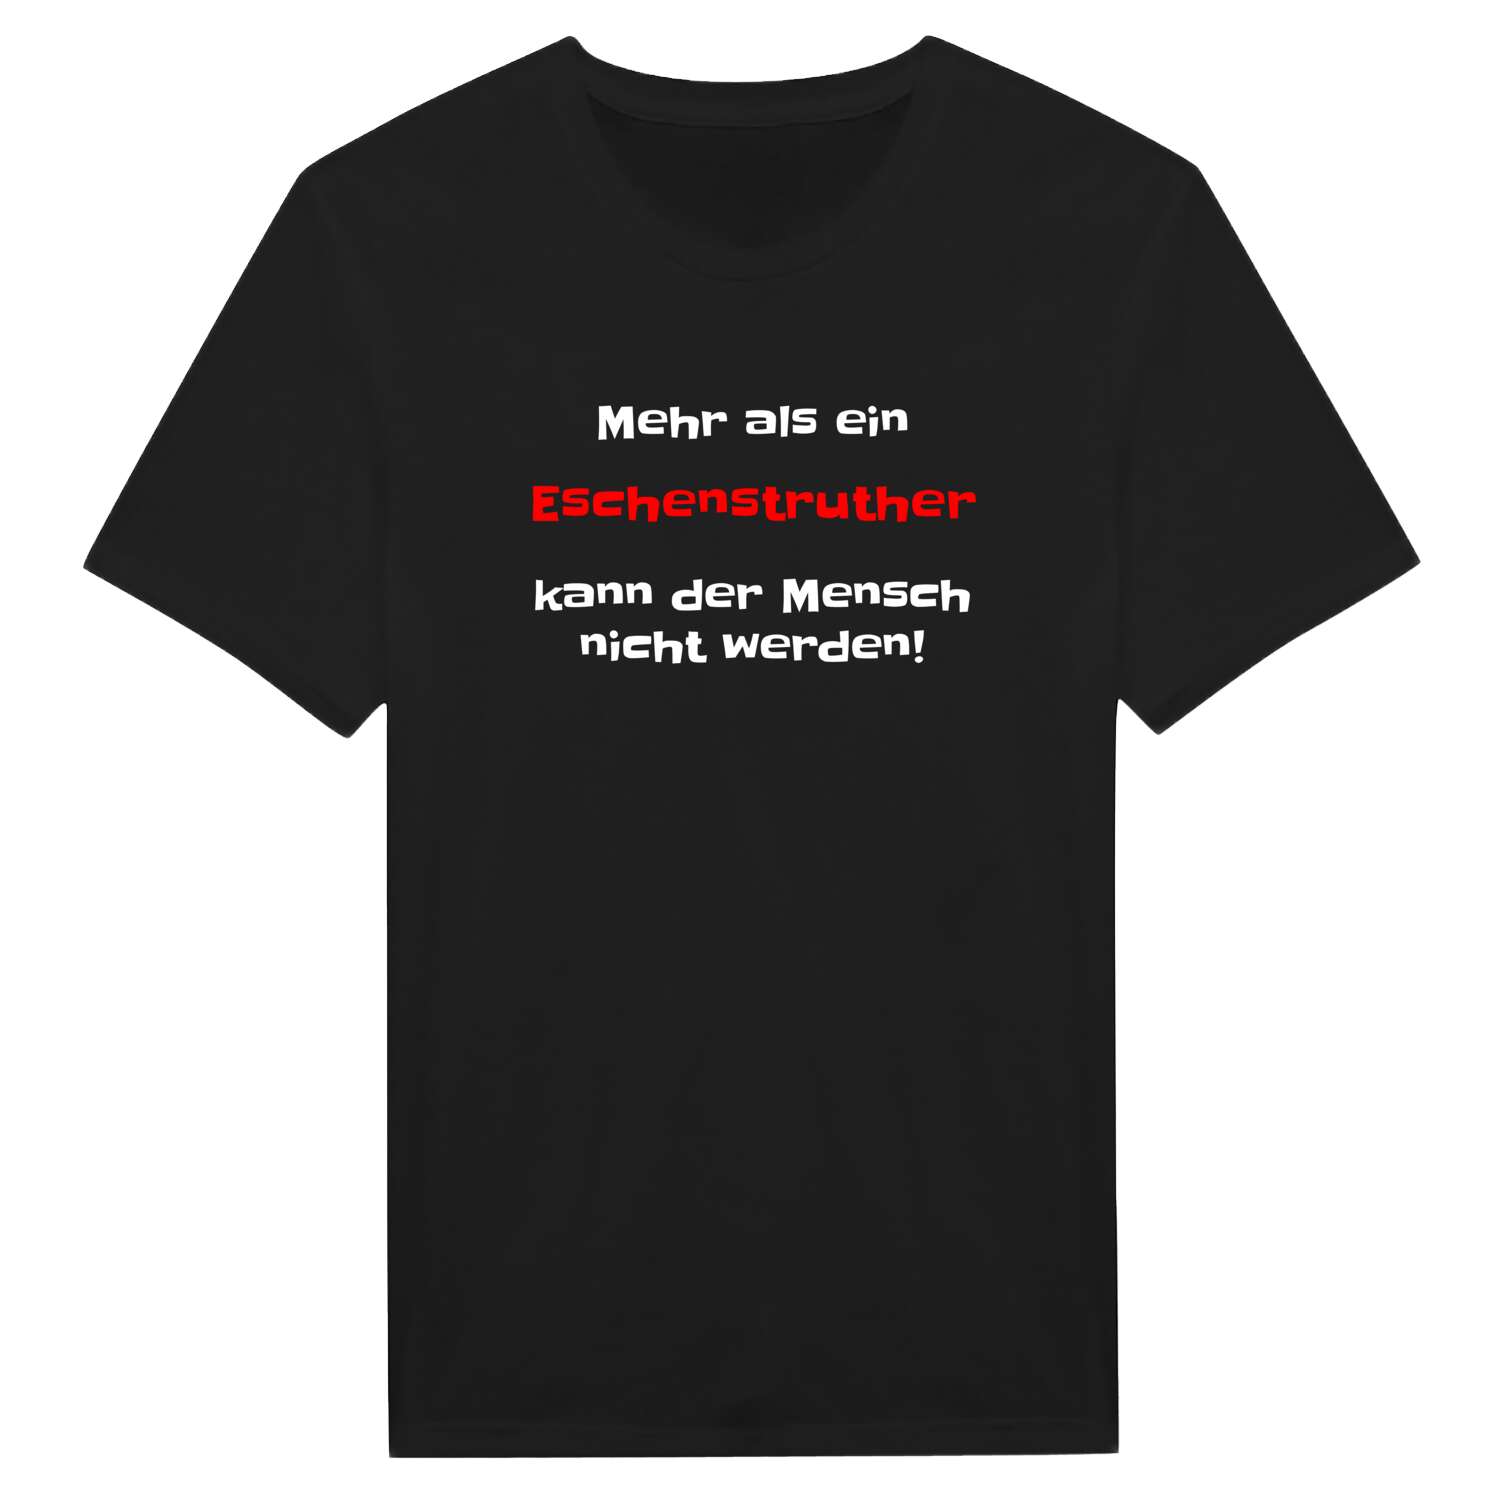 Eschenstruth T-Shirt »Mehr als ein«